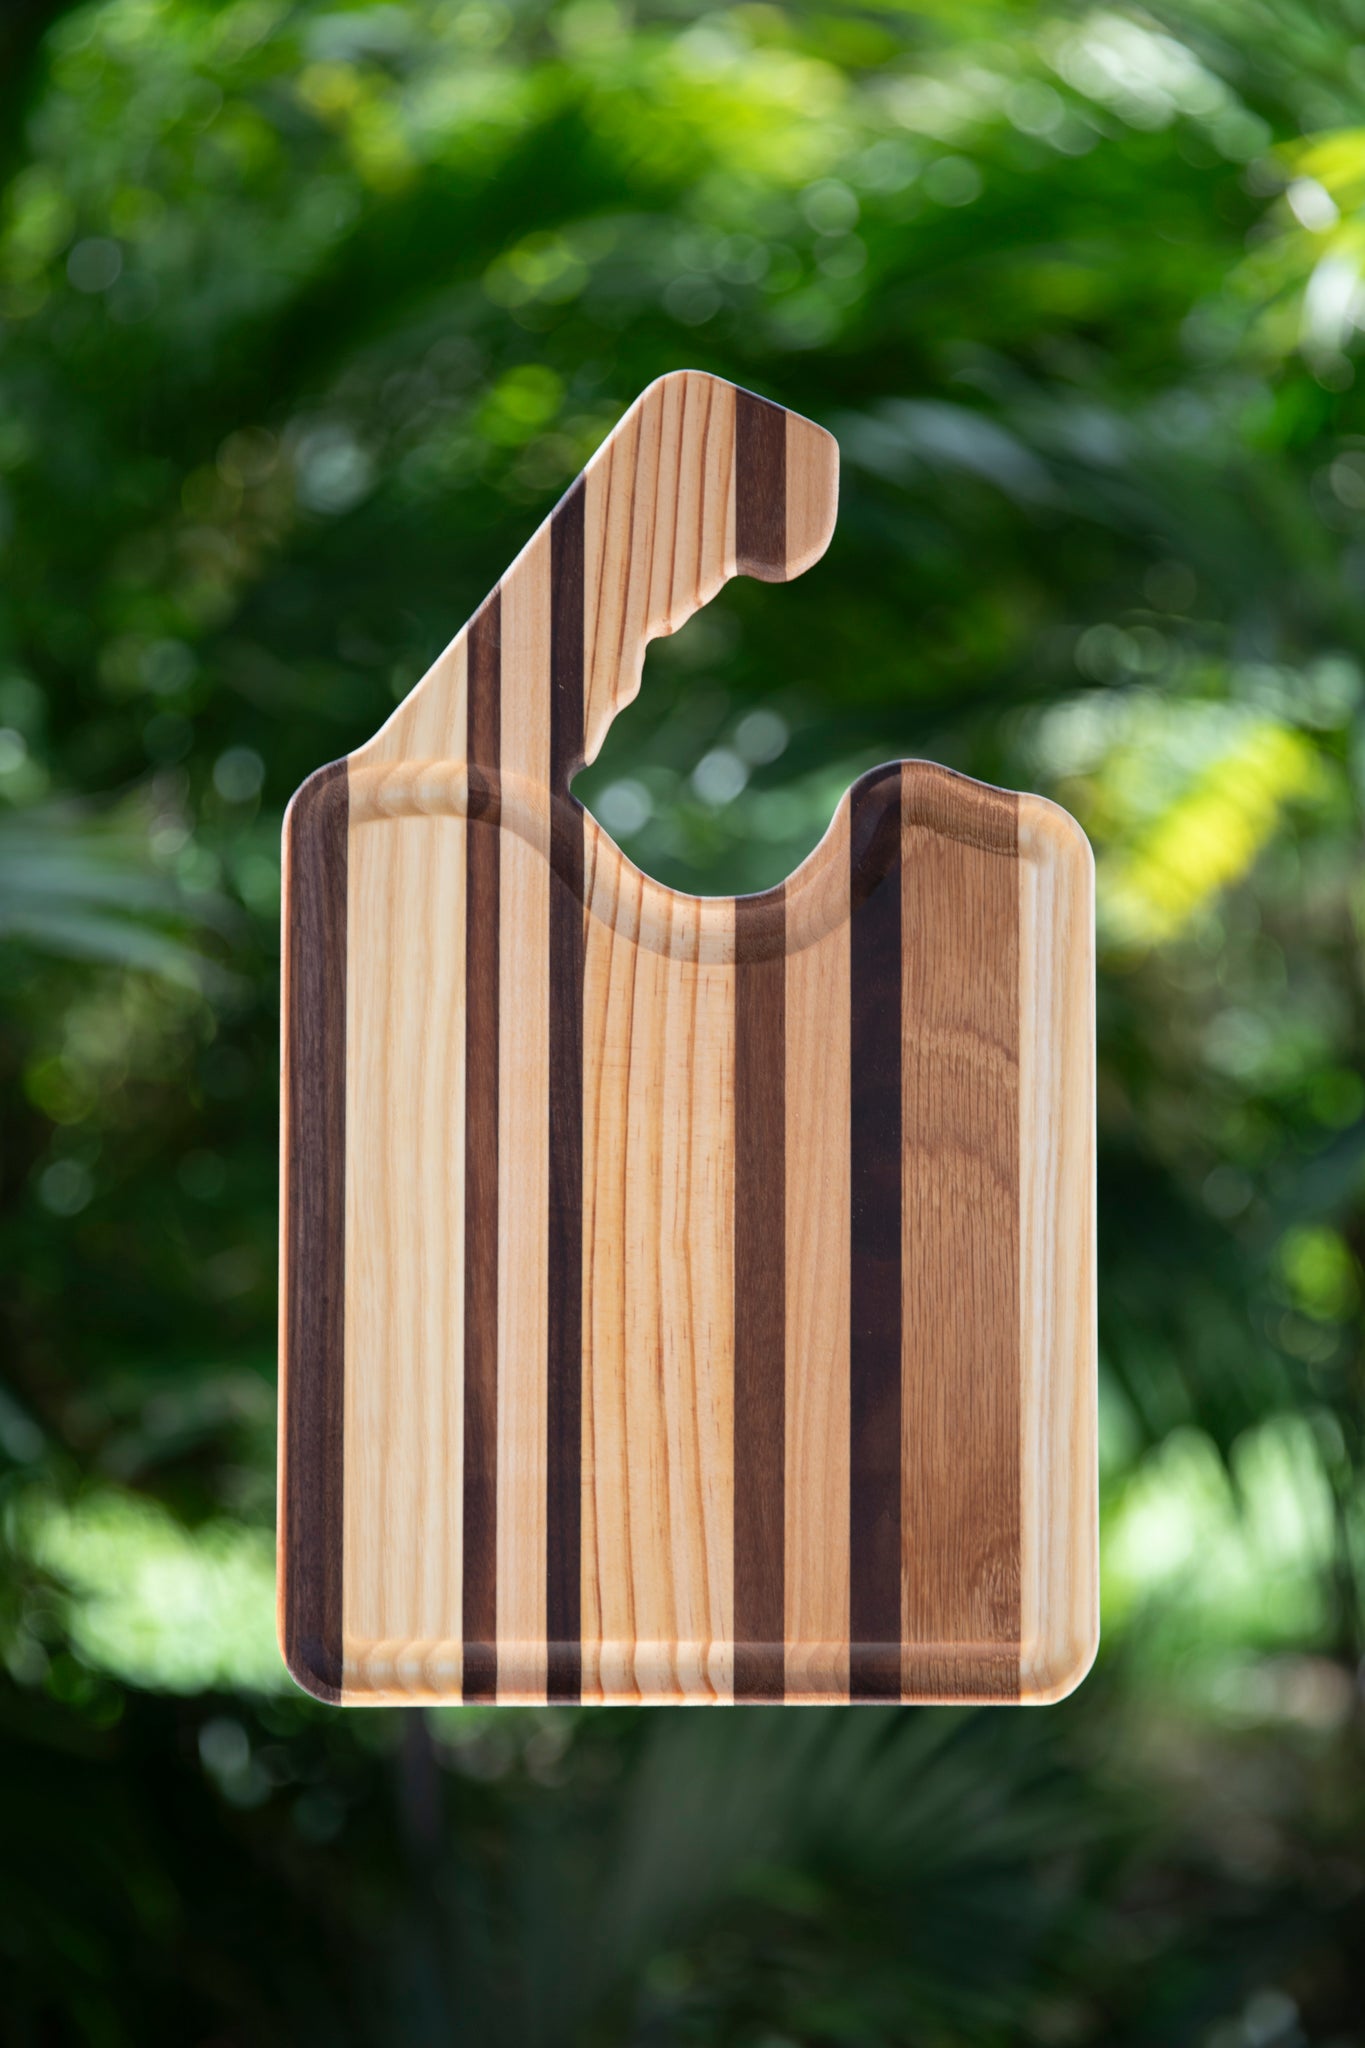 Hardwood Cutting Board (13"x8")